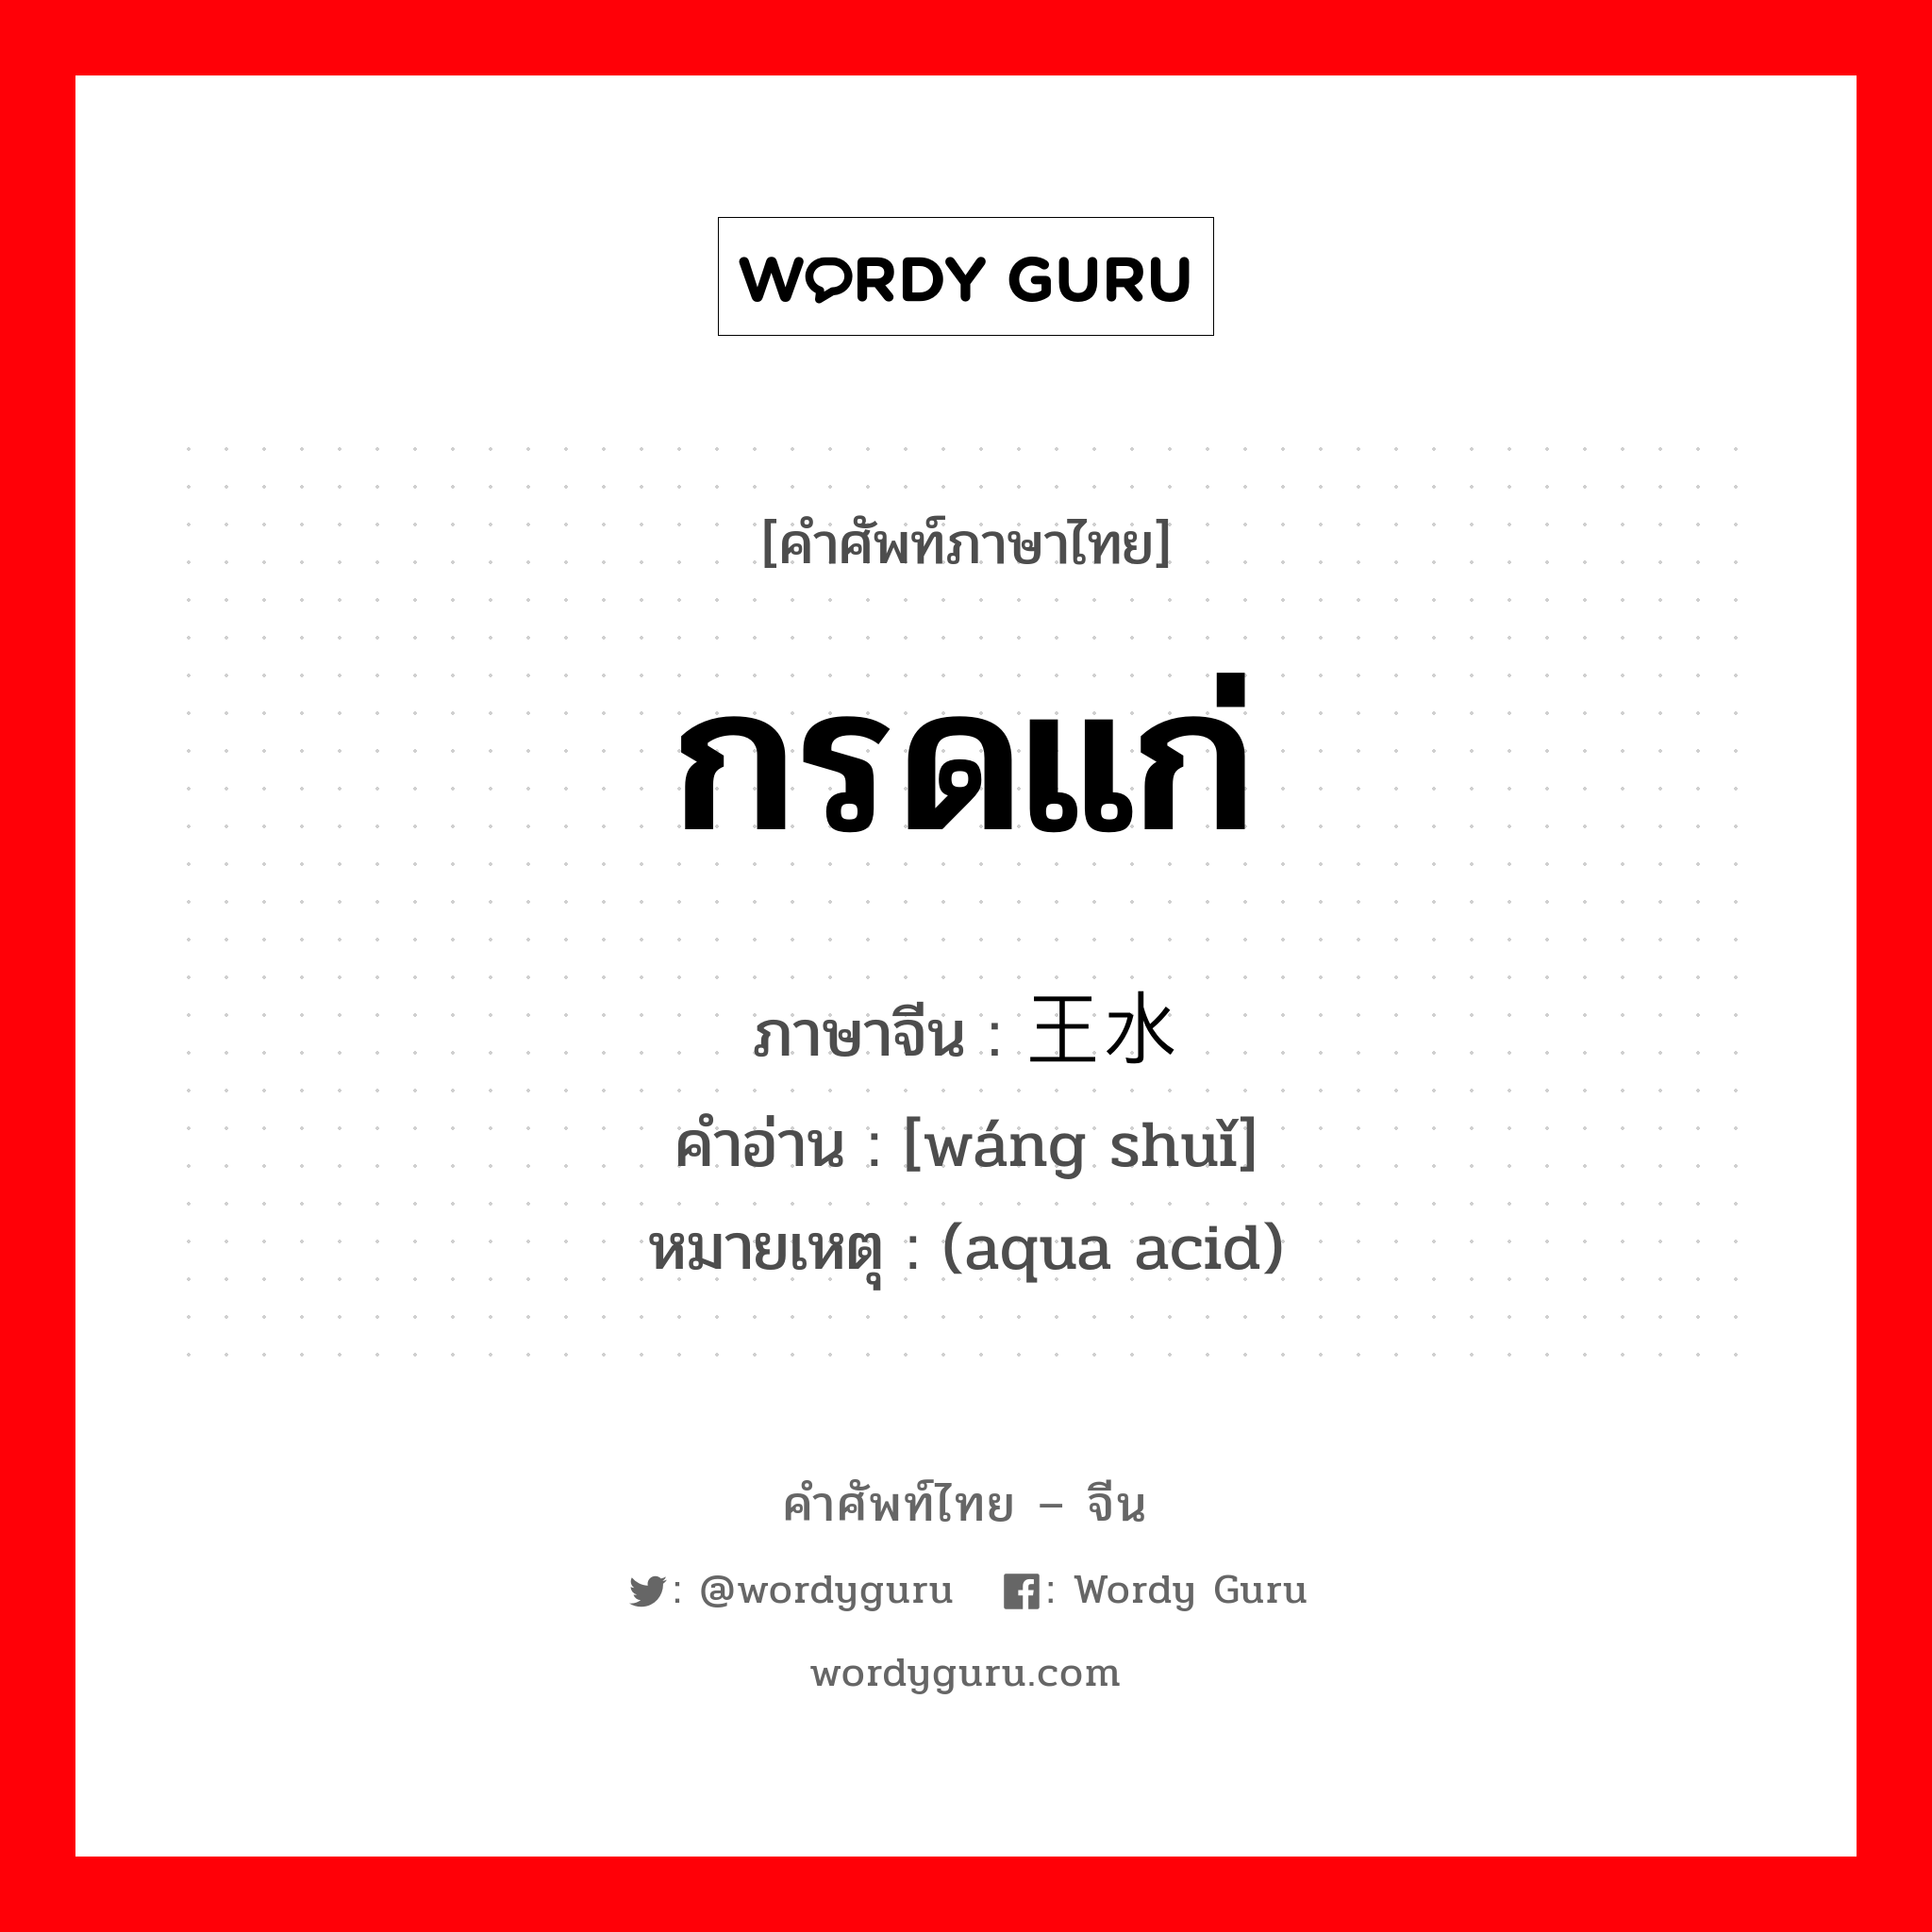 กรดแก่ ภาษาจีนคืออะไร, คำศัพท์ภาษาไทย - จีน กรดแก่ ภาษาจีน 王水 คำอ่าน [wáng shuǐ] หมายเหตุ (aqua acid)